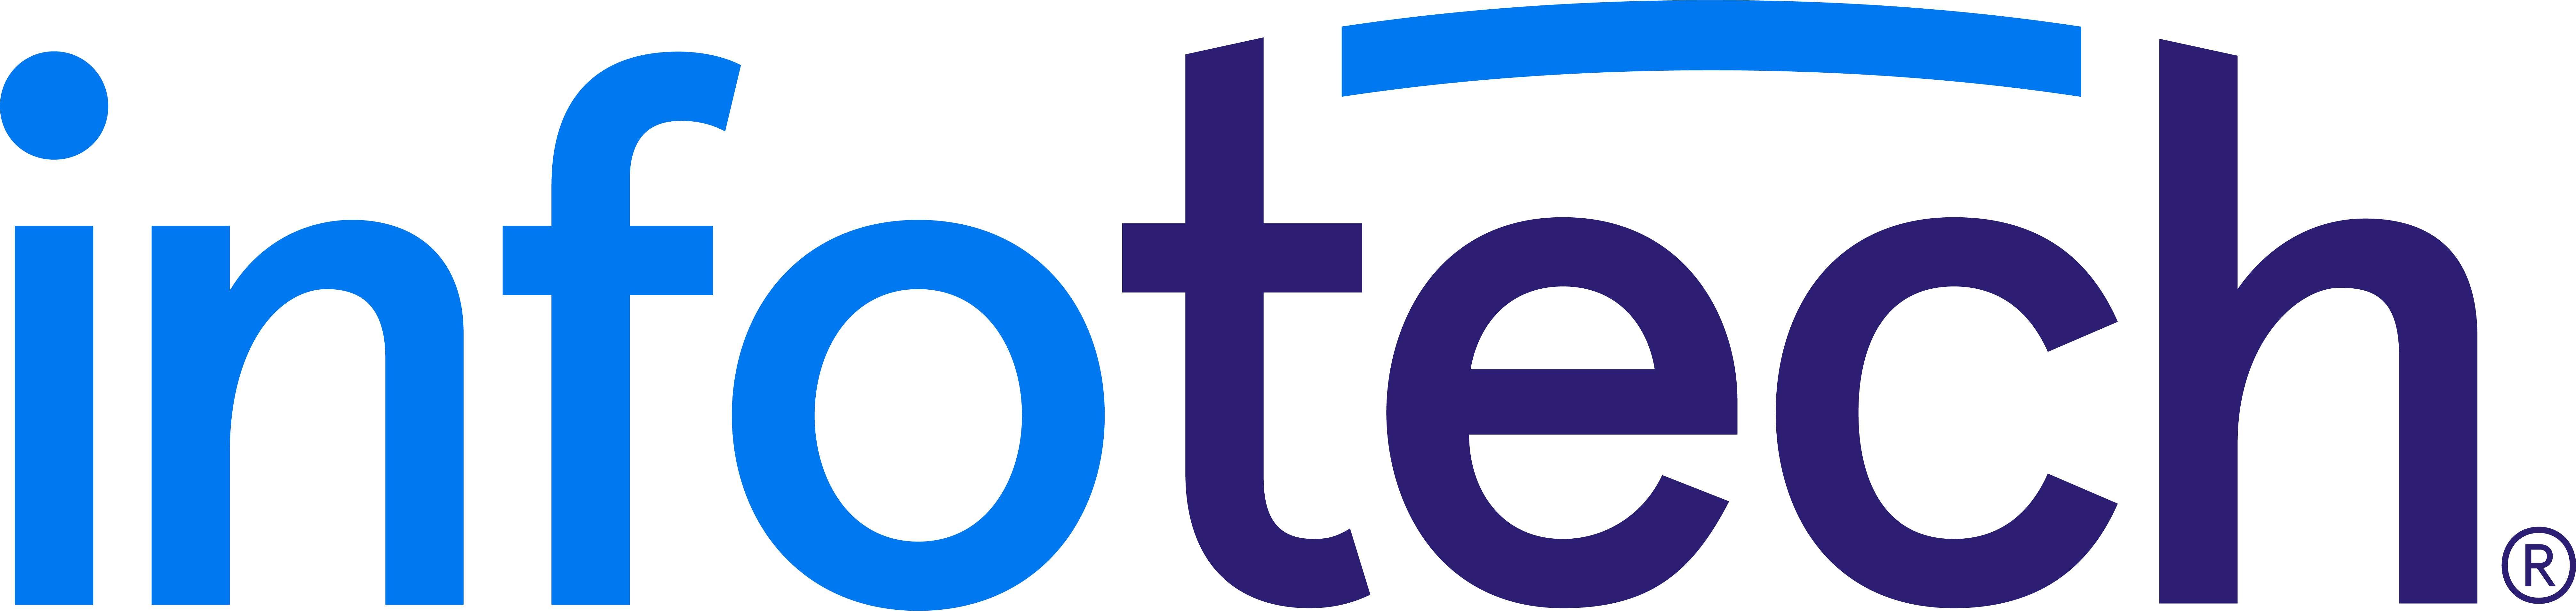 Infotech logo